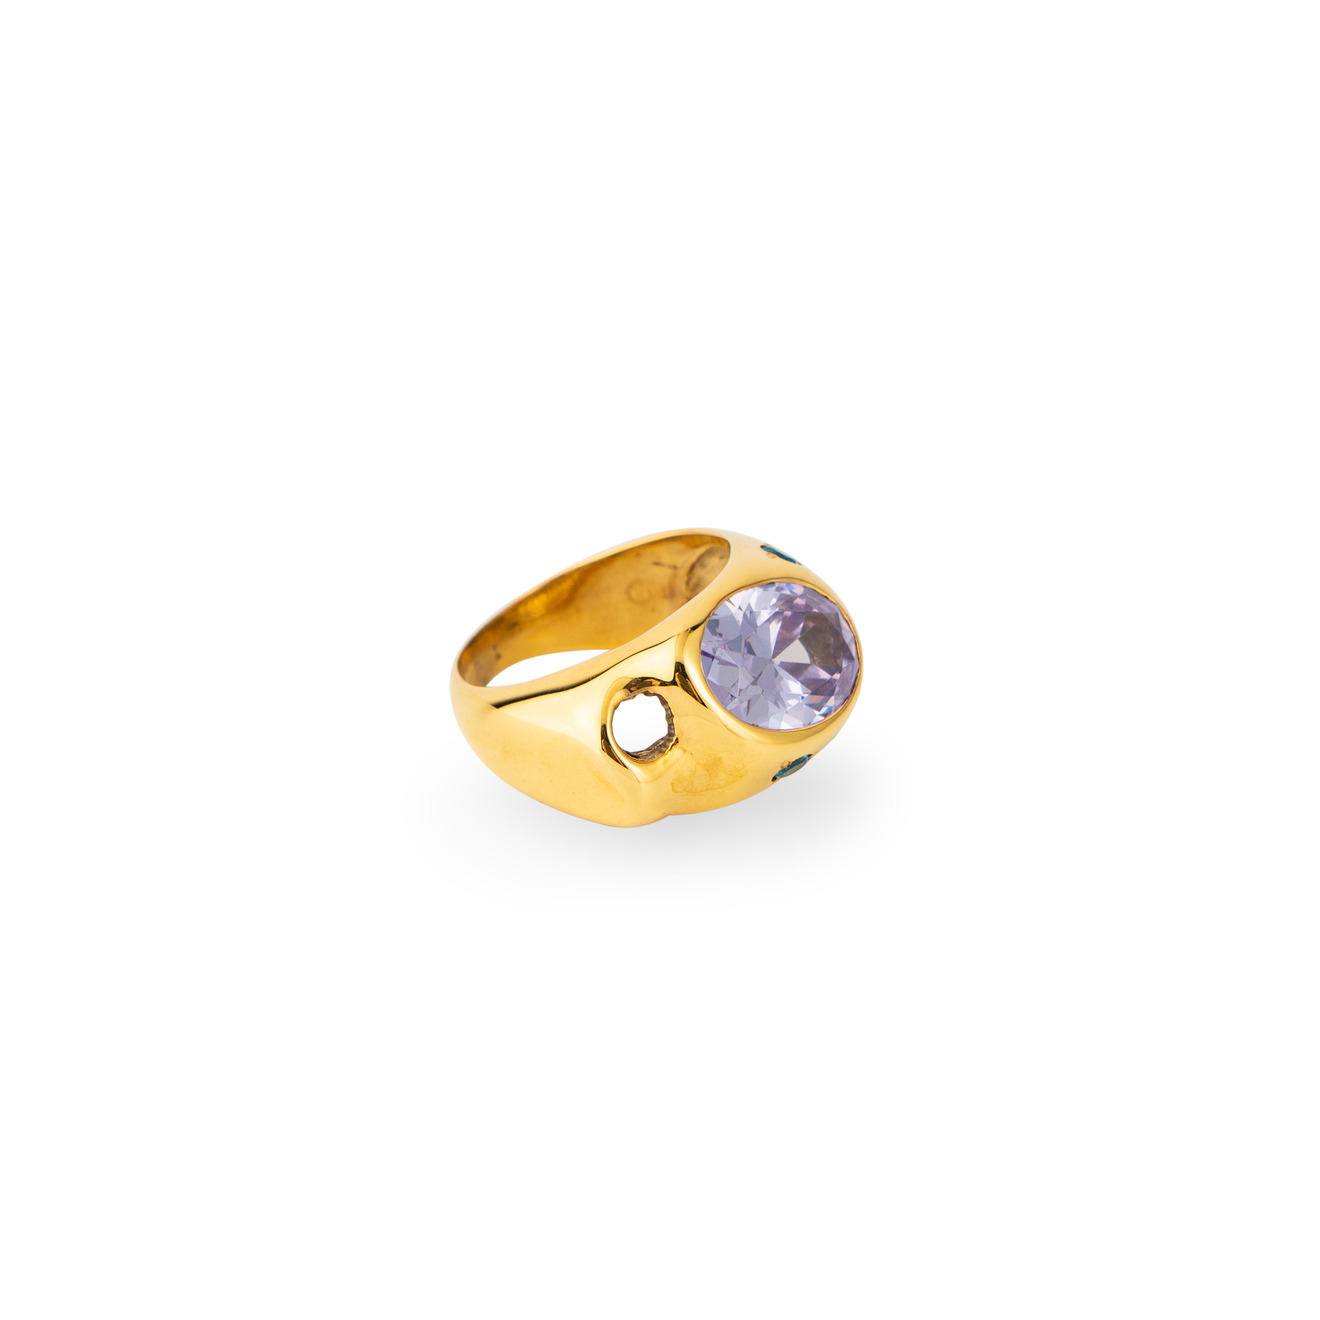 Janashia Золотистое кольцо Ava волнообразной формы со вставками из розово-голубых кристаллов issue 2 золотистое кольцо in bloom из гематита